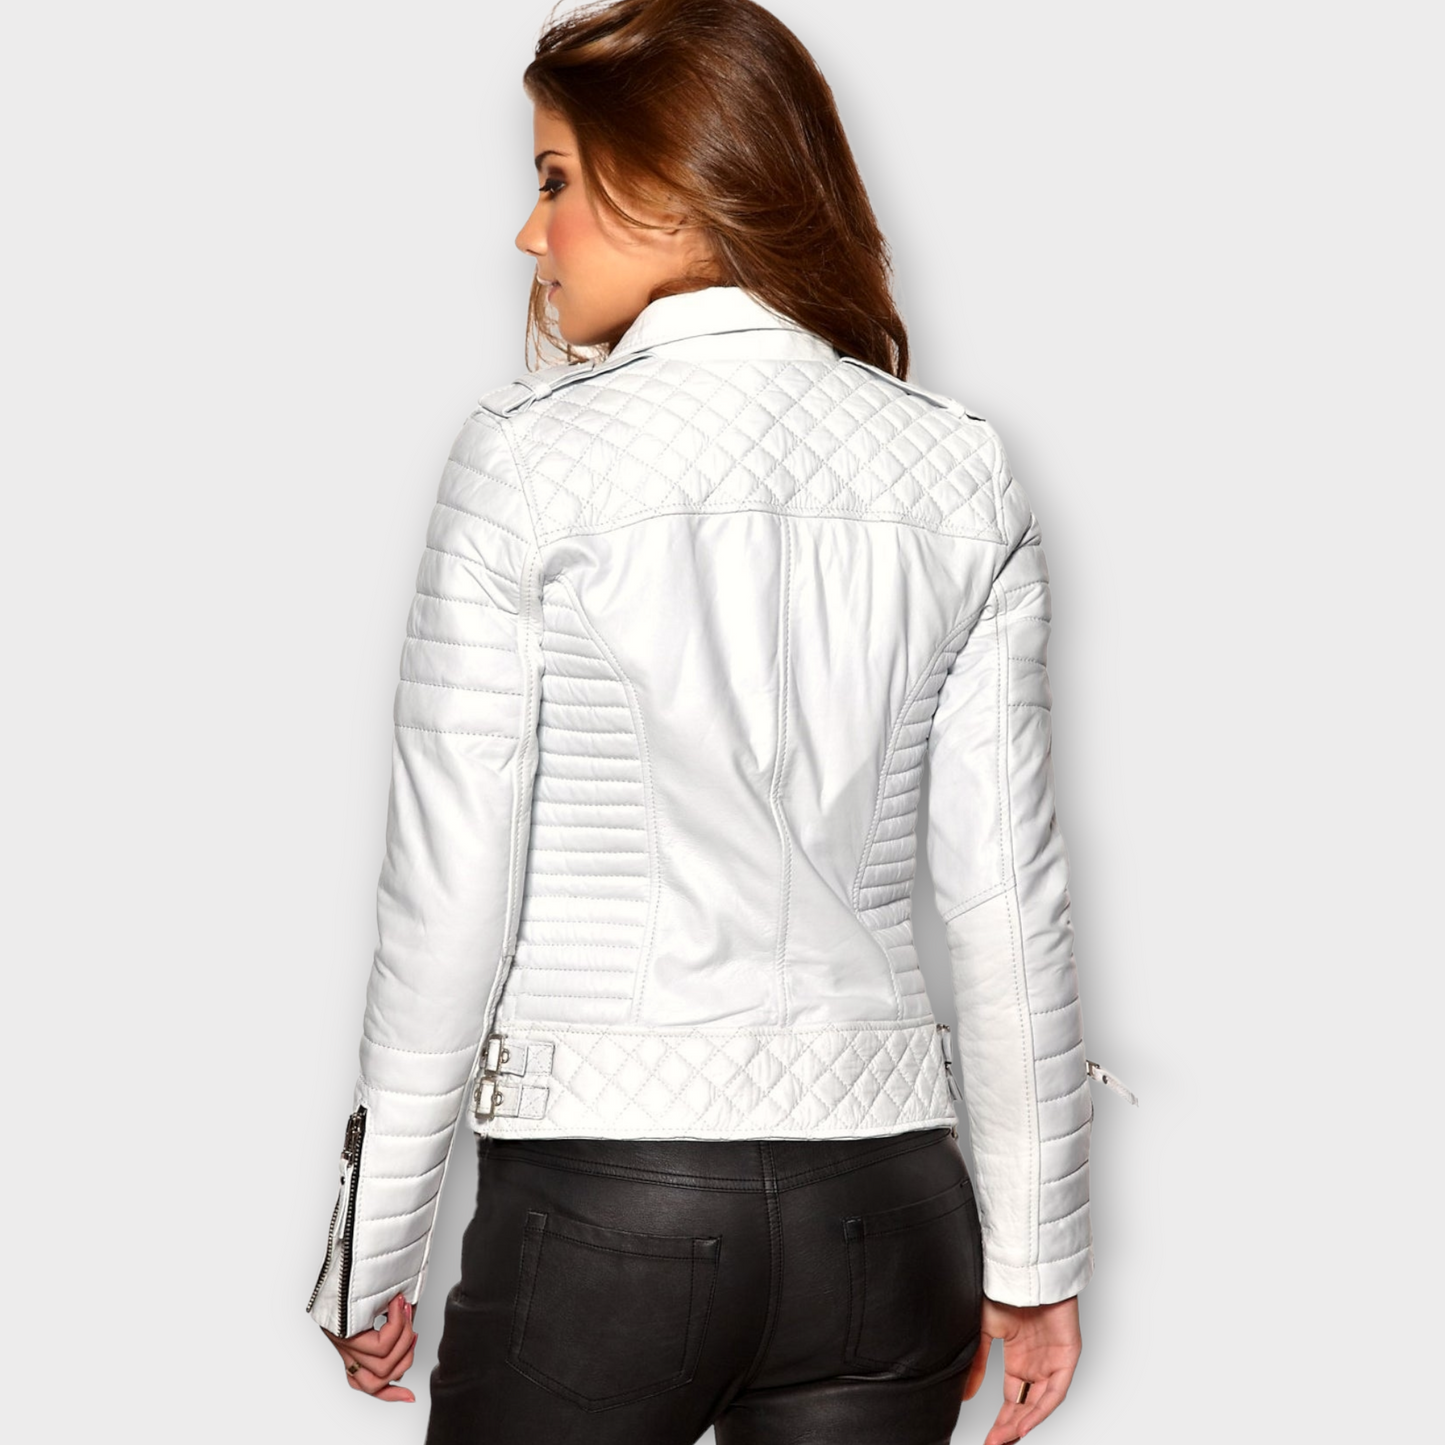 Lambskin Leather Bomber Jacket For Women Quilted Leather Jacket White Leather Biker Jacket For Girls Gift for Women